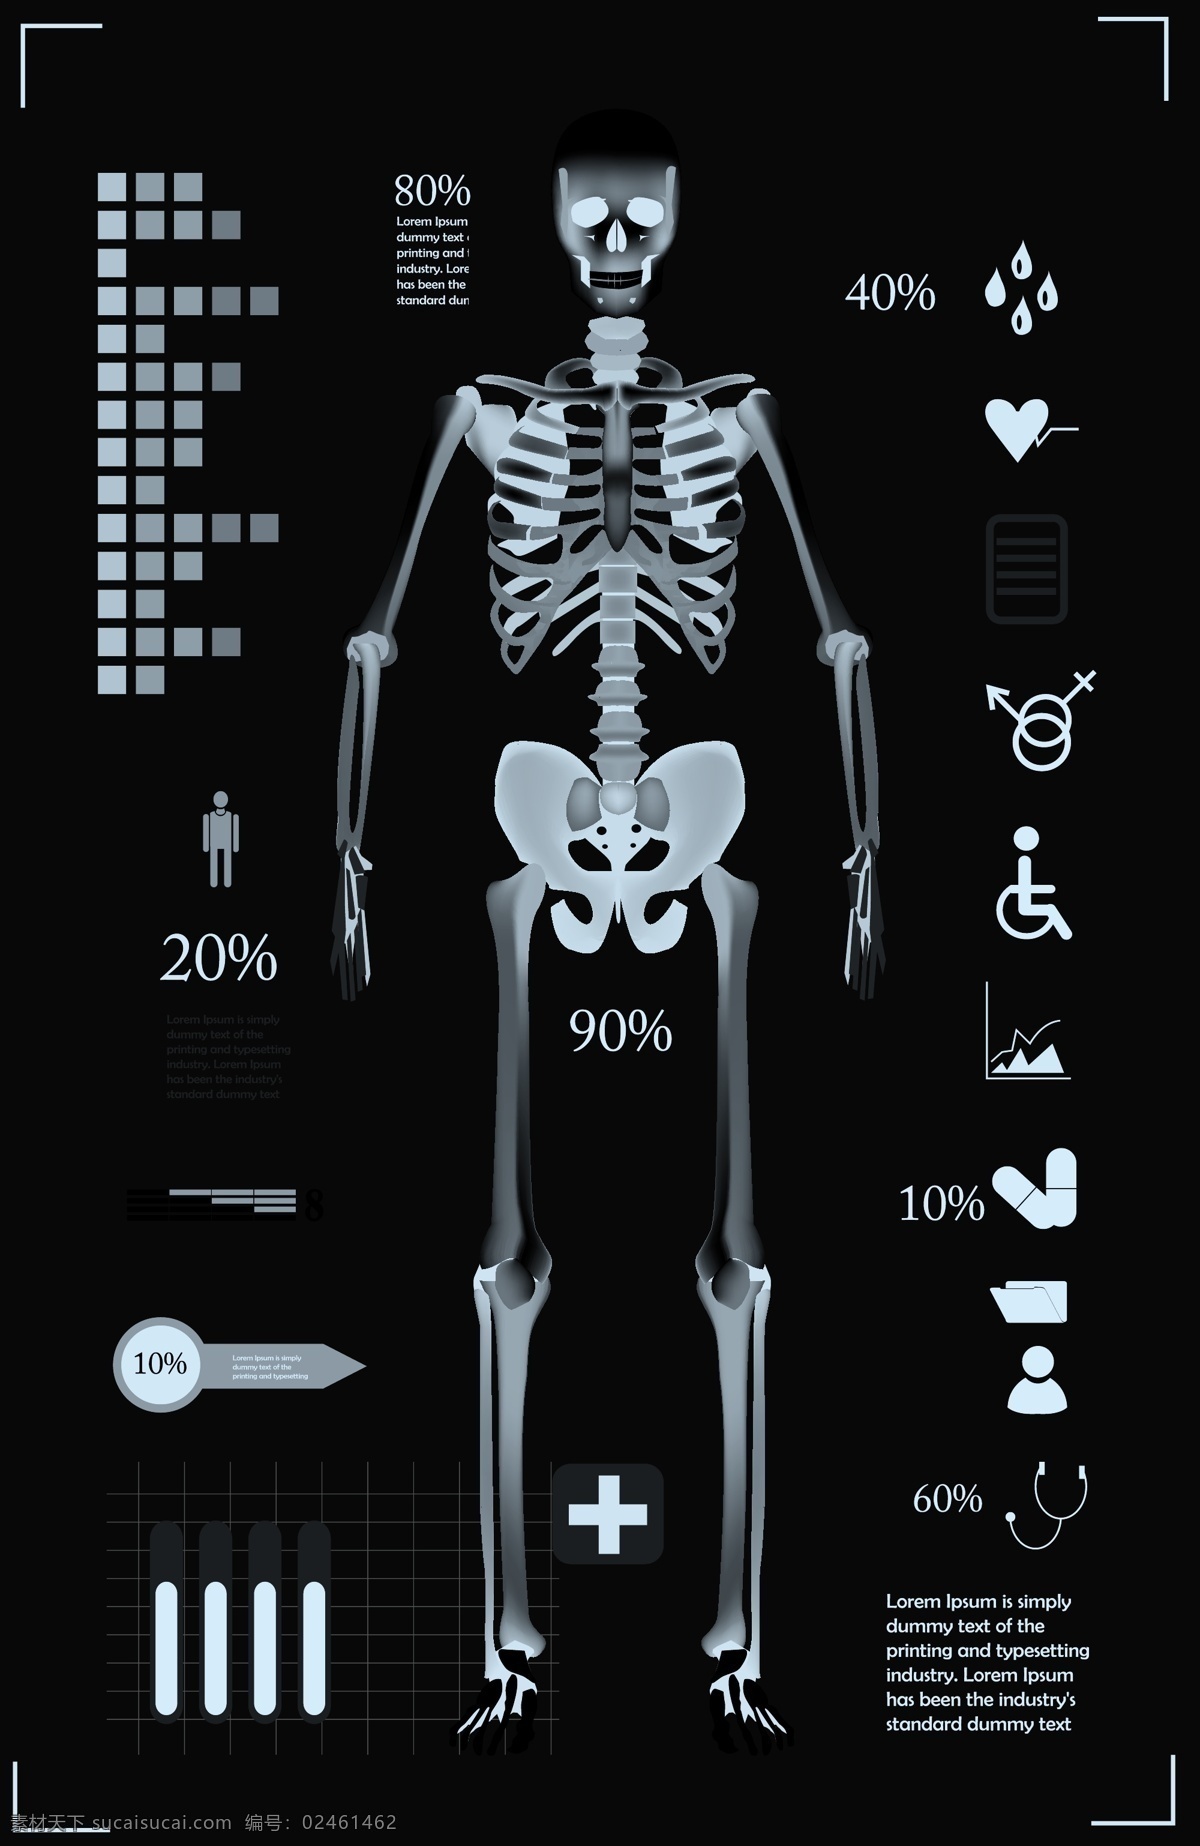 医院 信息 图表 信息图表 人物 骨架 医疗图表 图标 矢量图标 医疗 生活百科 矢量素材 黑色